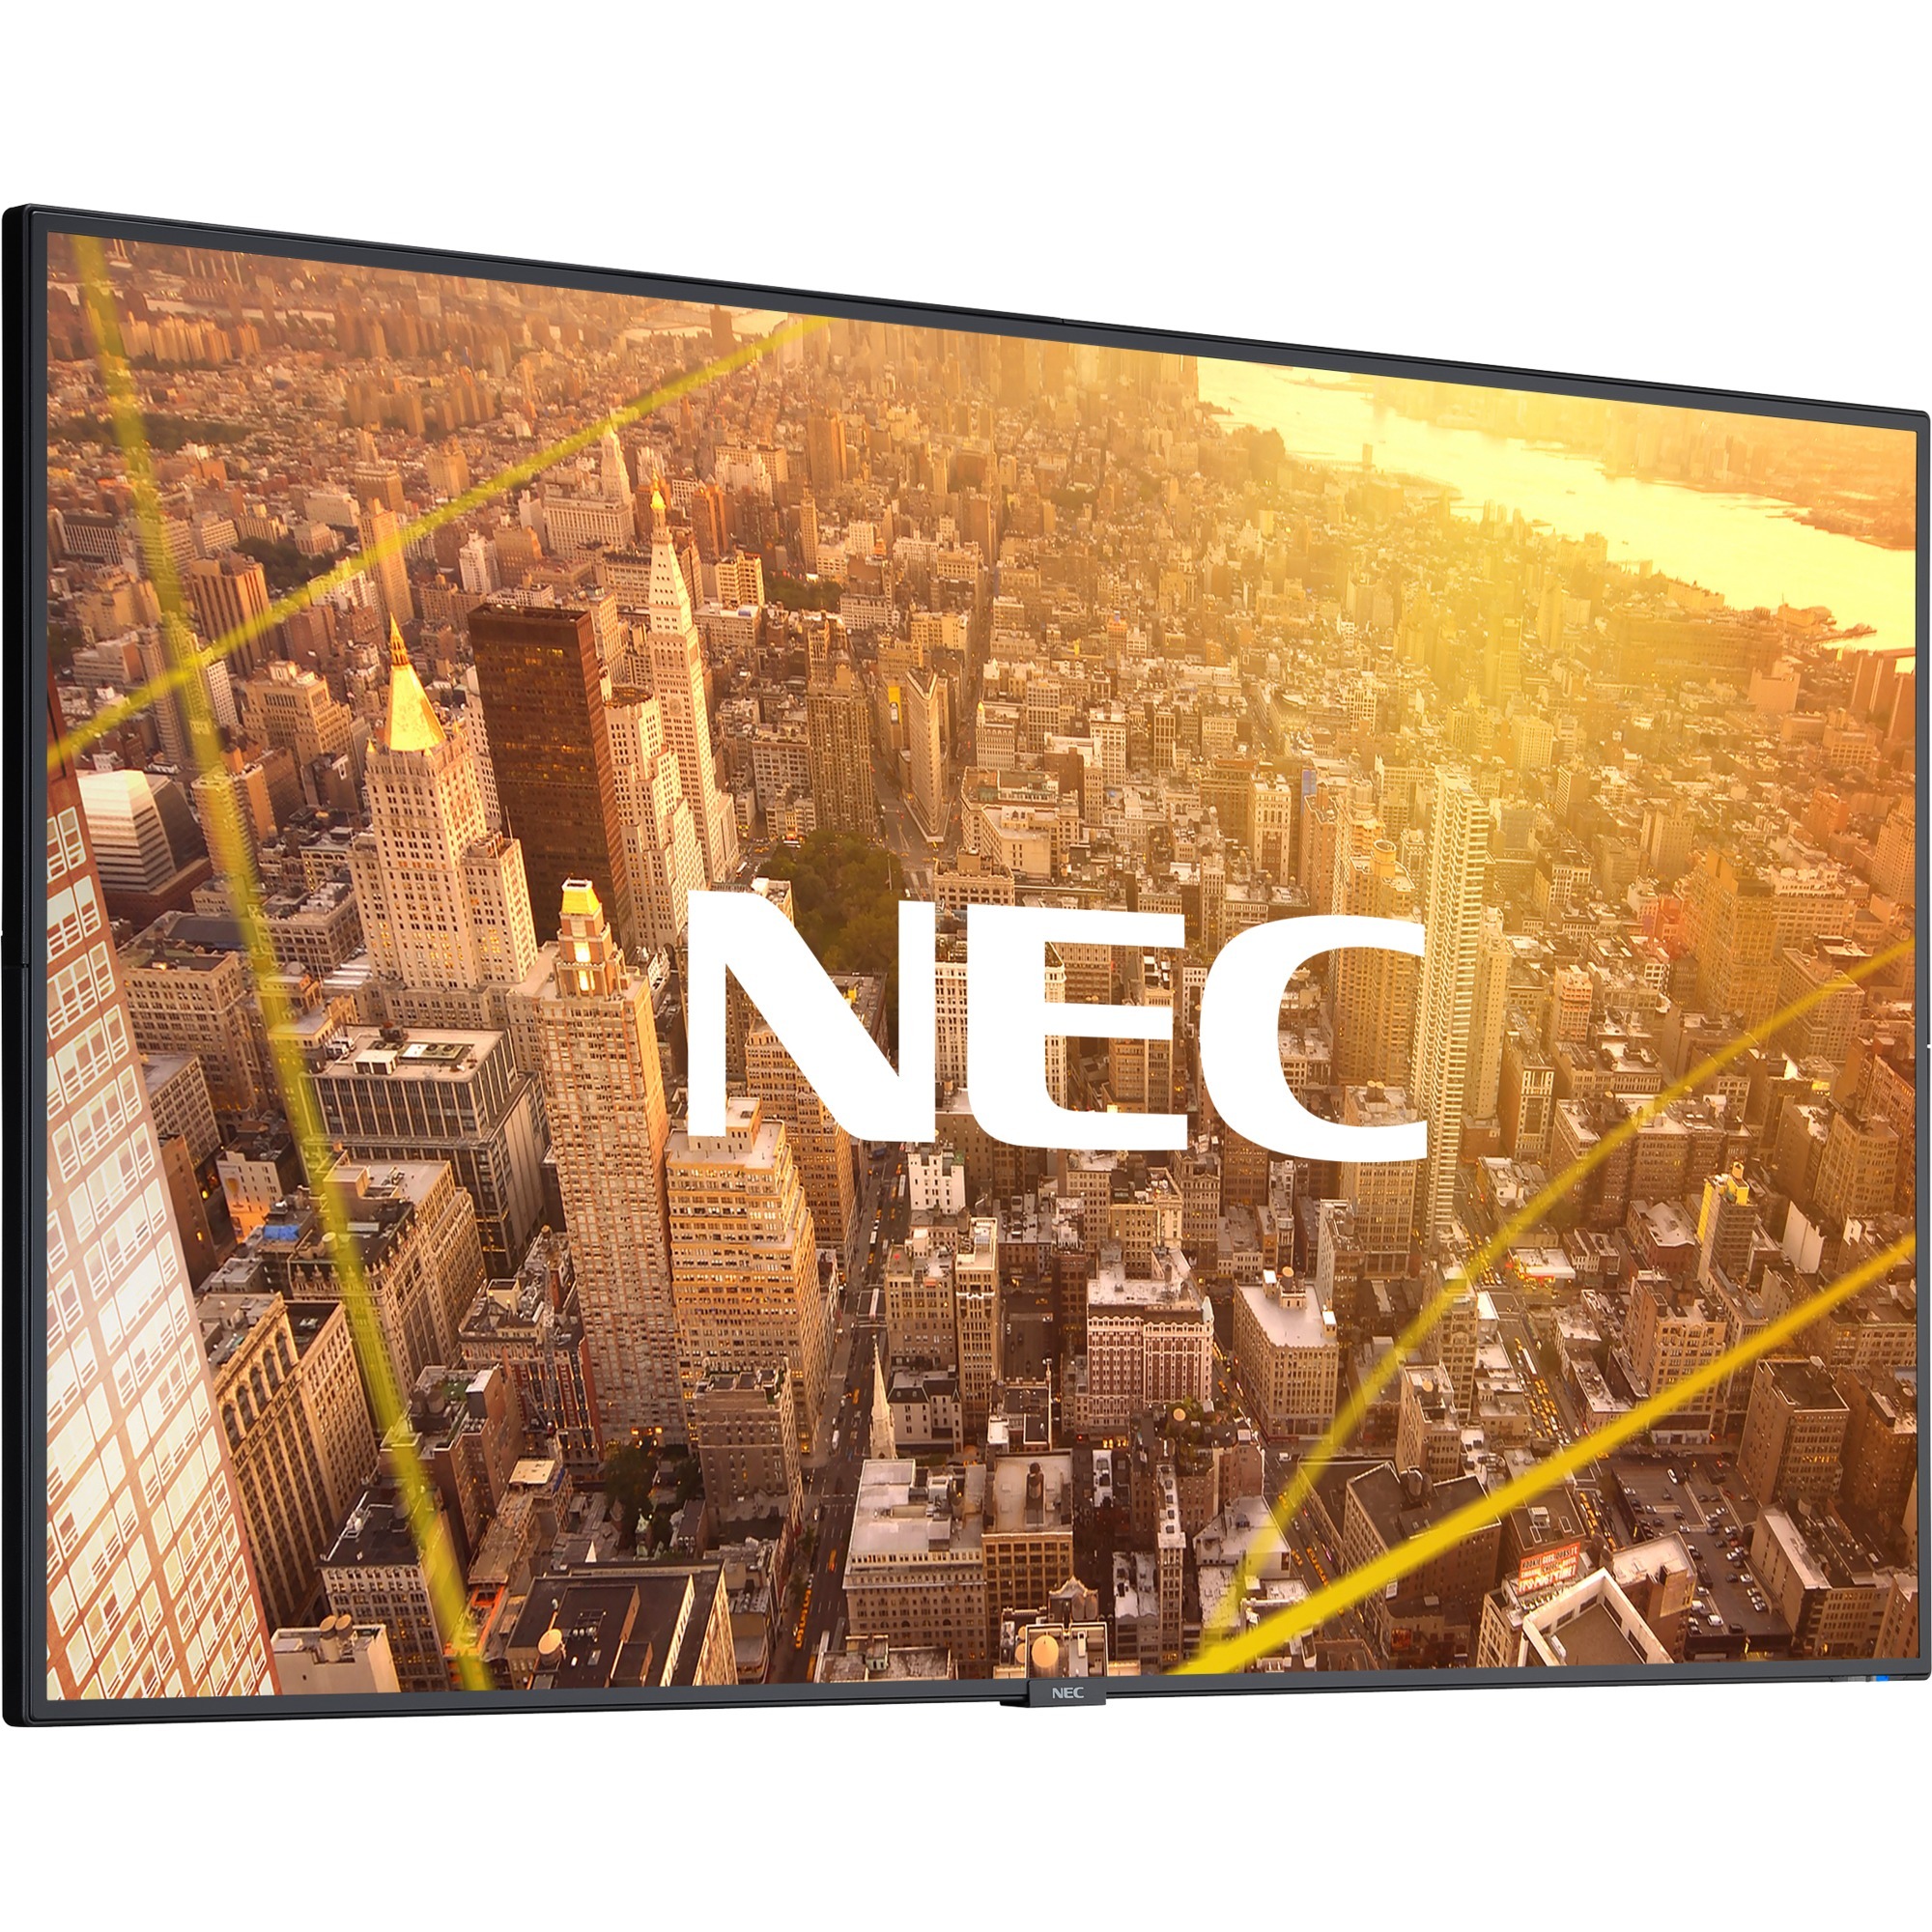 C501 127 cm (50") LED (Dioda elektroluminescencyjna) Full HD Digital signage flat panel Czarny, Wyświetlacz